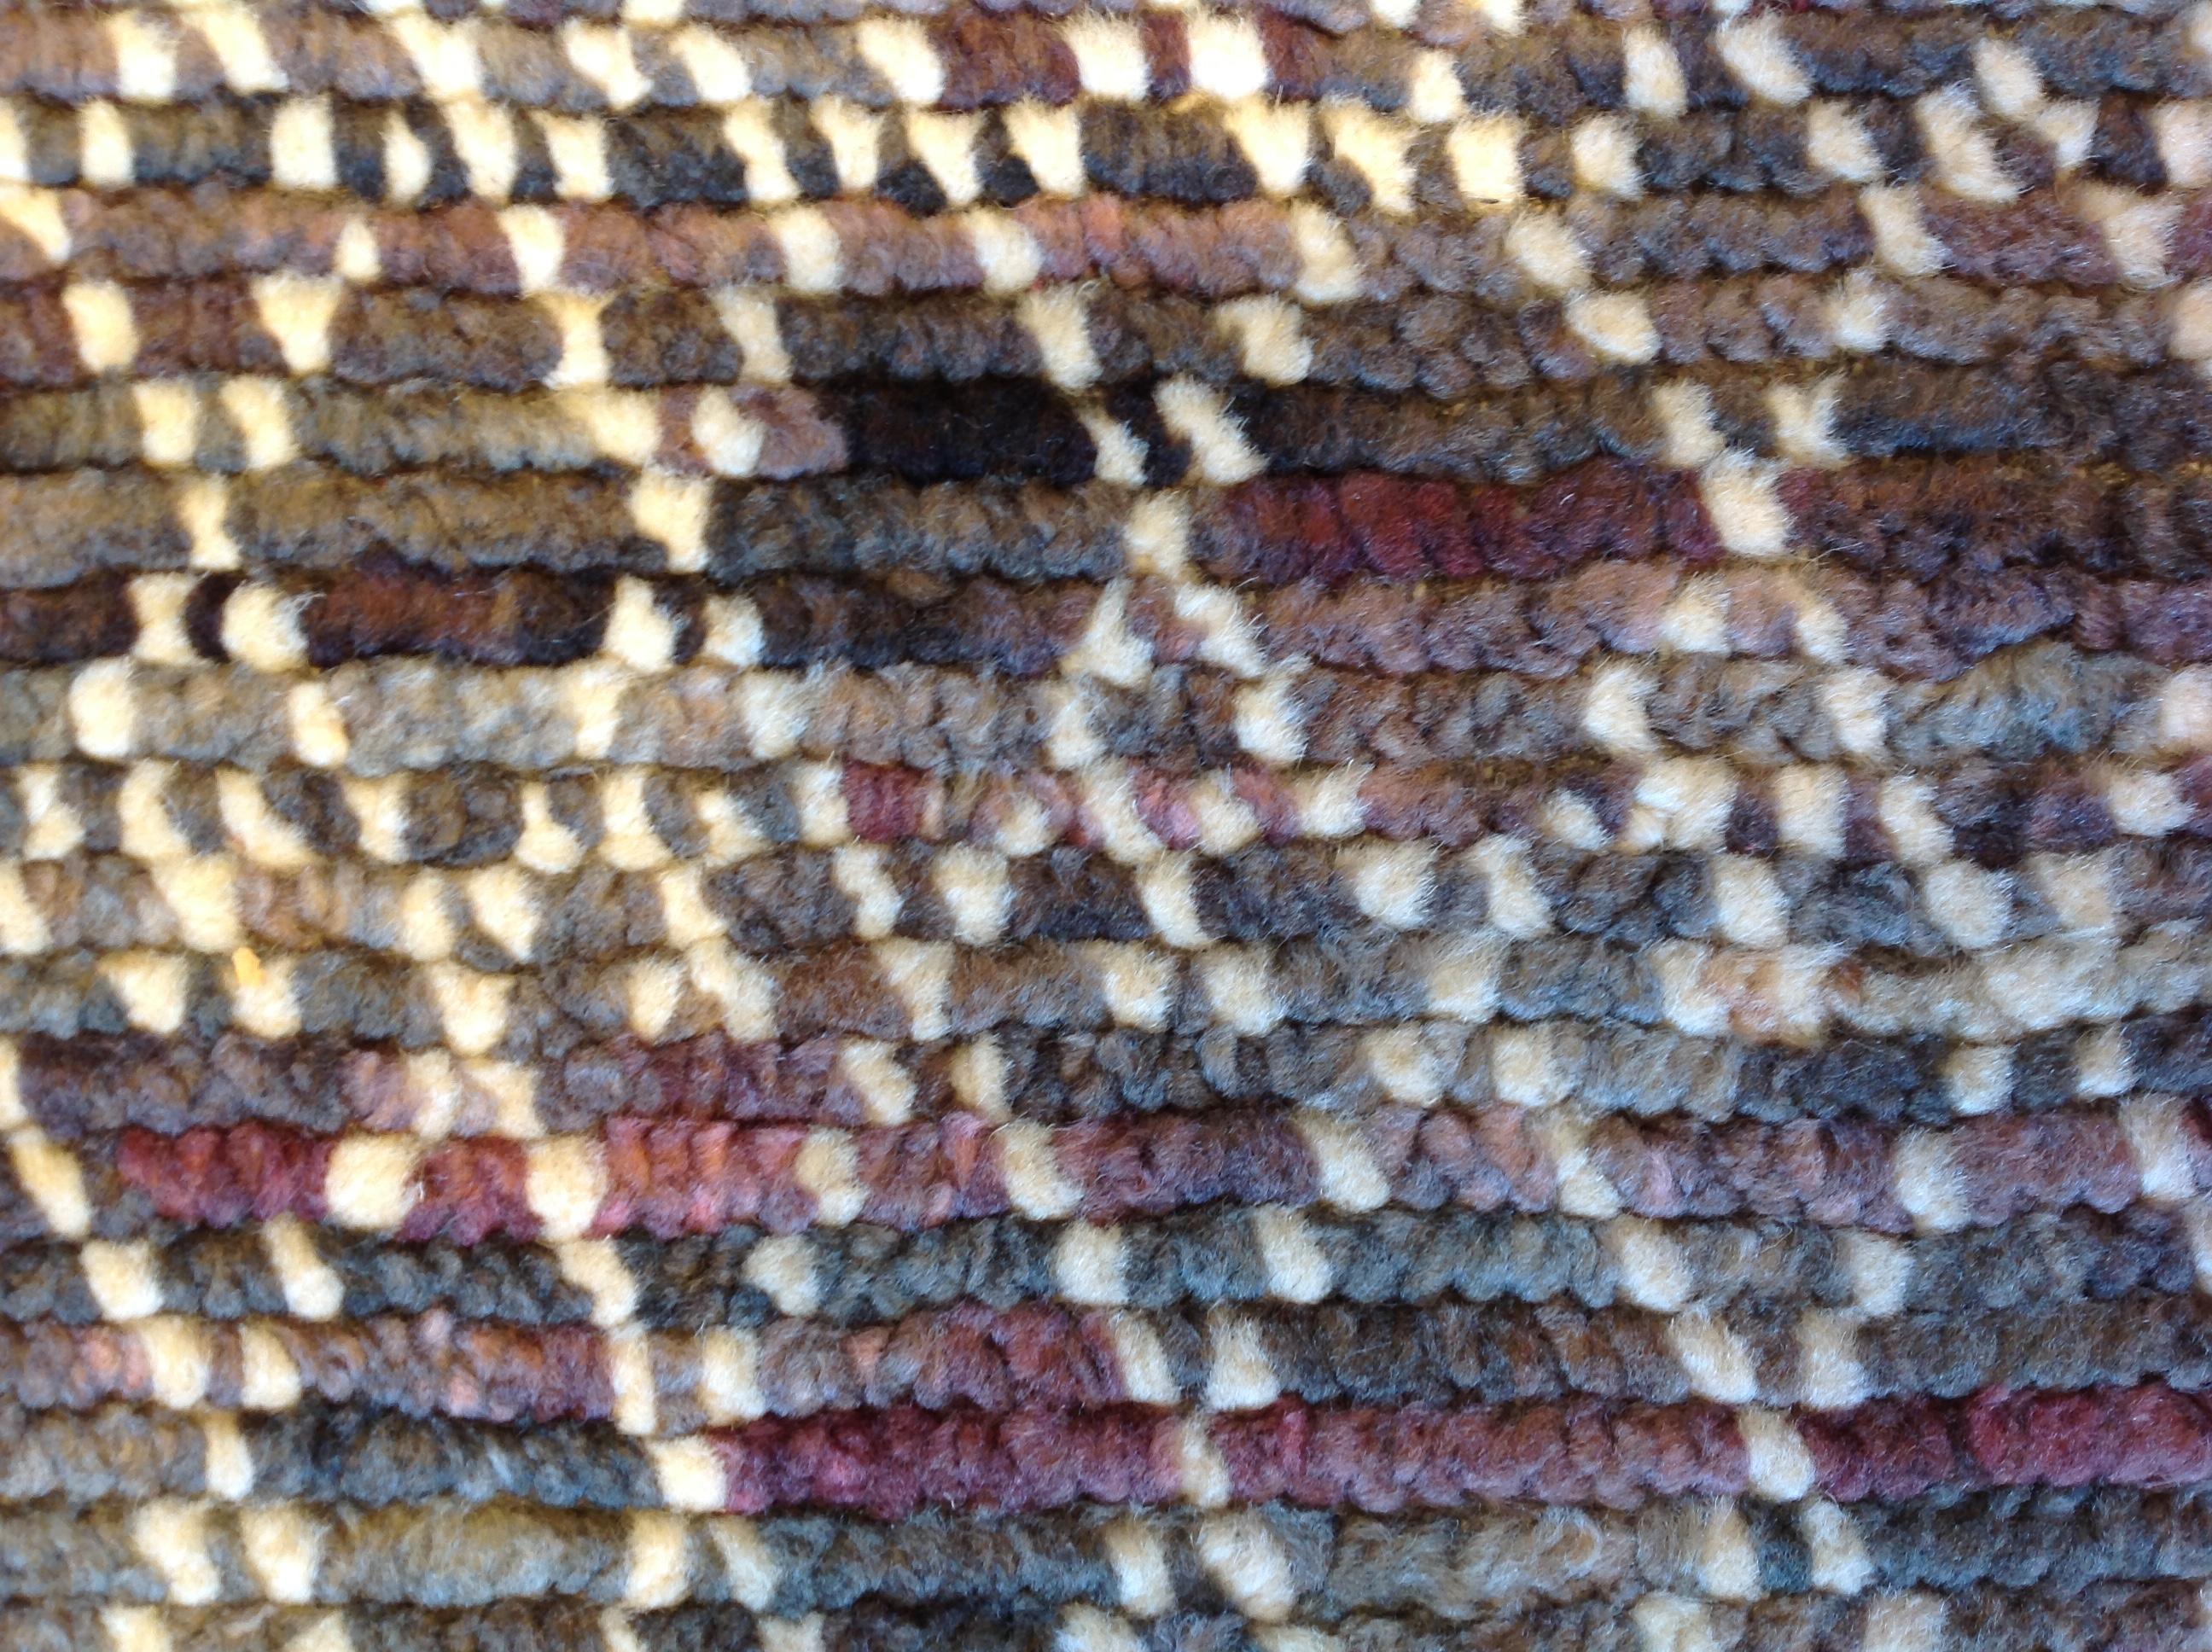 Braun- und Burgundertöne bilden einen farbenprächtigen Kontrast zu dem elfenbeinfarbenen Kreuzmuster. Wolle, Viskose und Baumwolle sorgen für einen genoppten Griff und eine strapazierfähige Konstruktion. Handgefertigt in Indien mit pflanzlichen